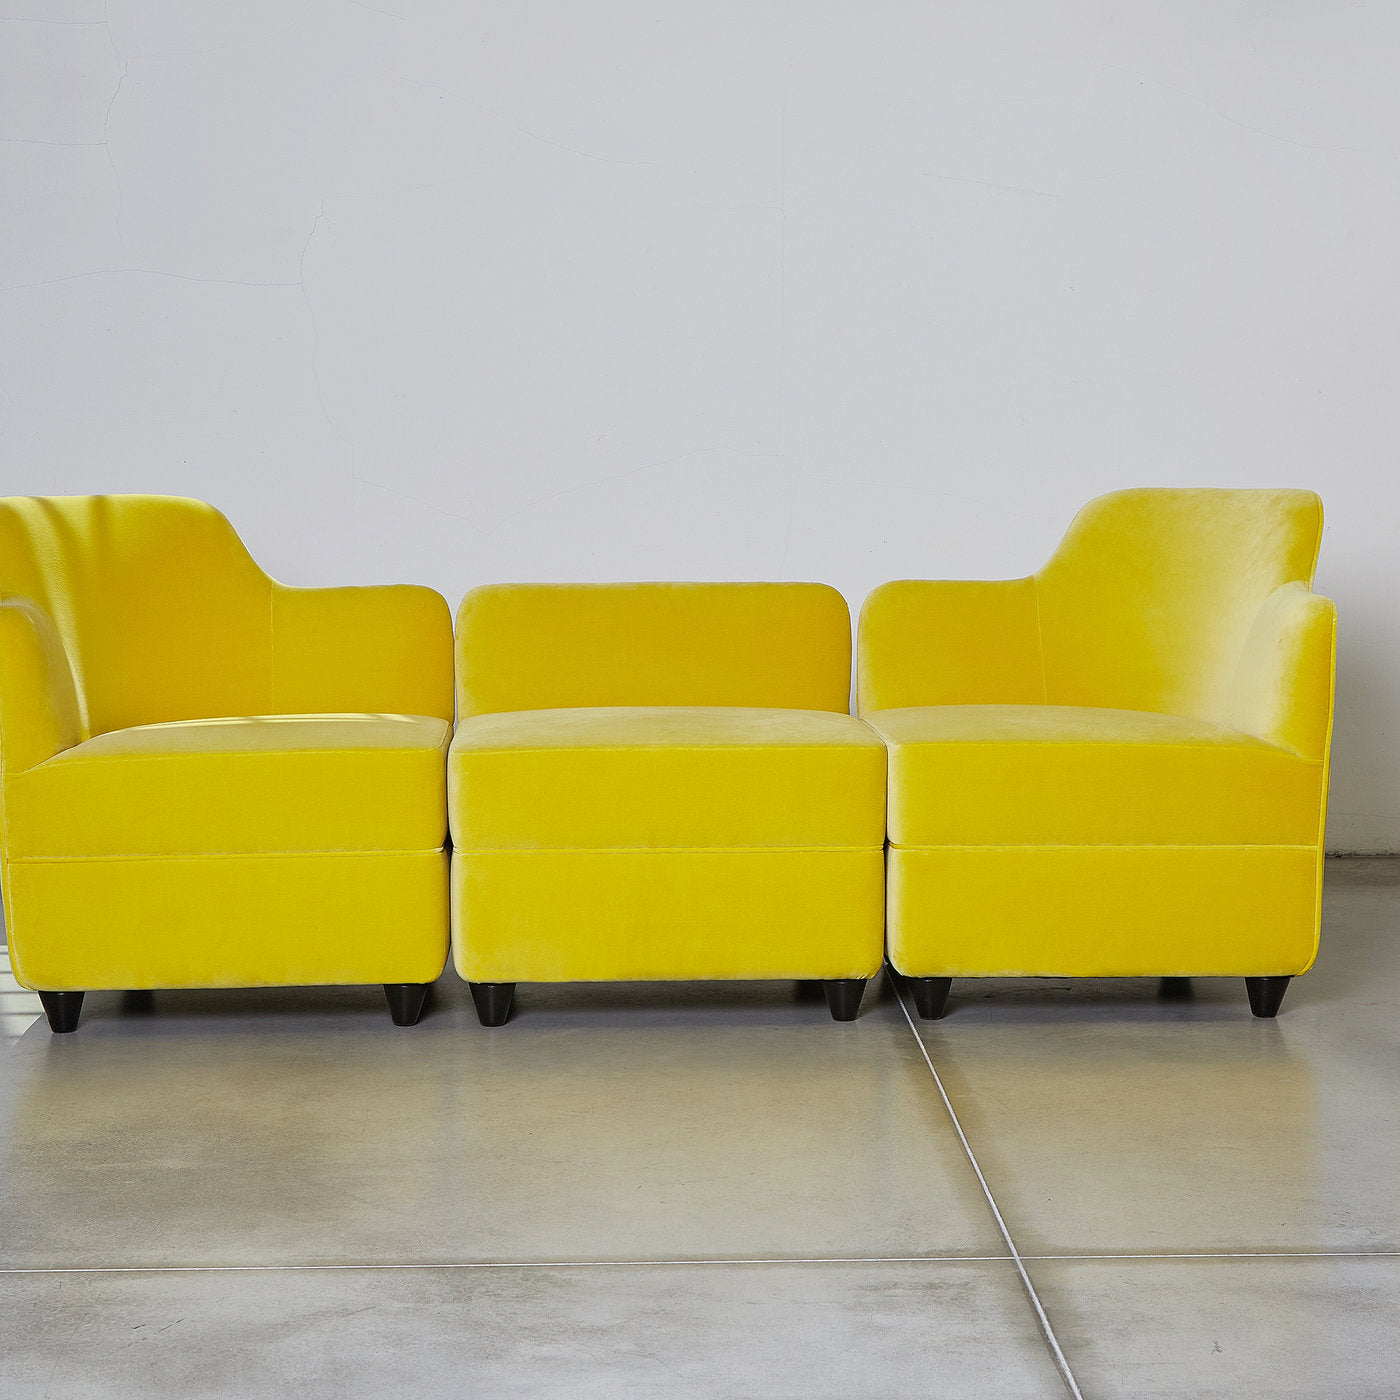 Angolo Yellow Pouf With Backrest by Corrado Corradi Dell'Acqua - Alternative view 1